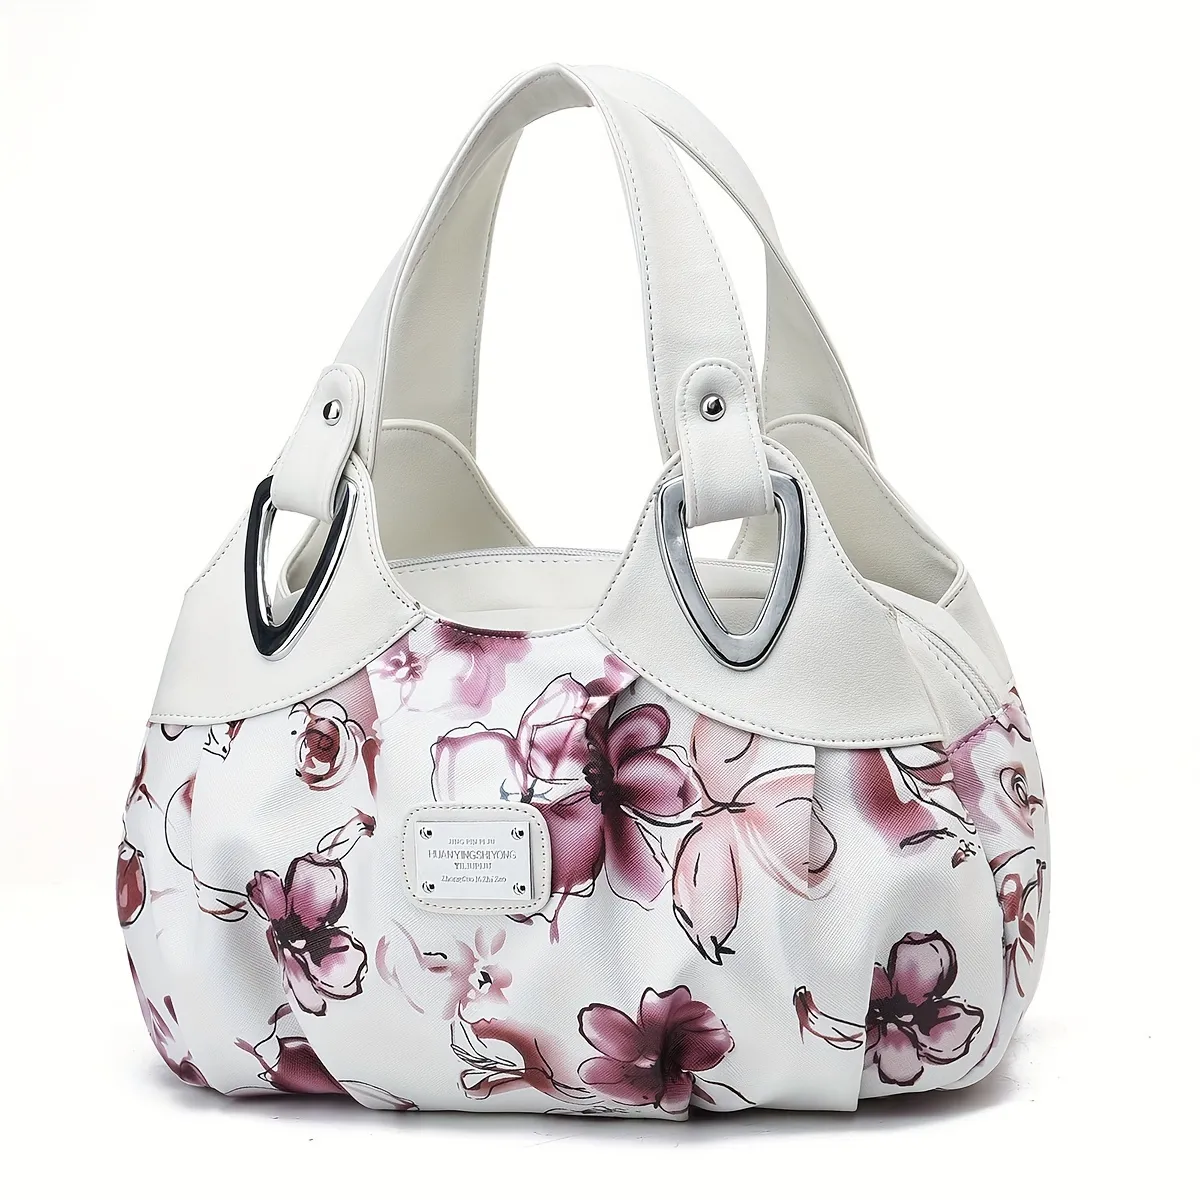 Panzexin Print Floral Handbag